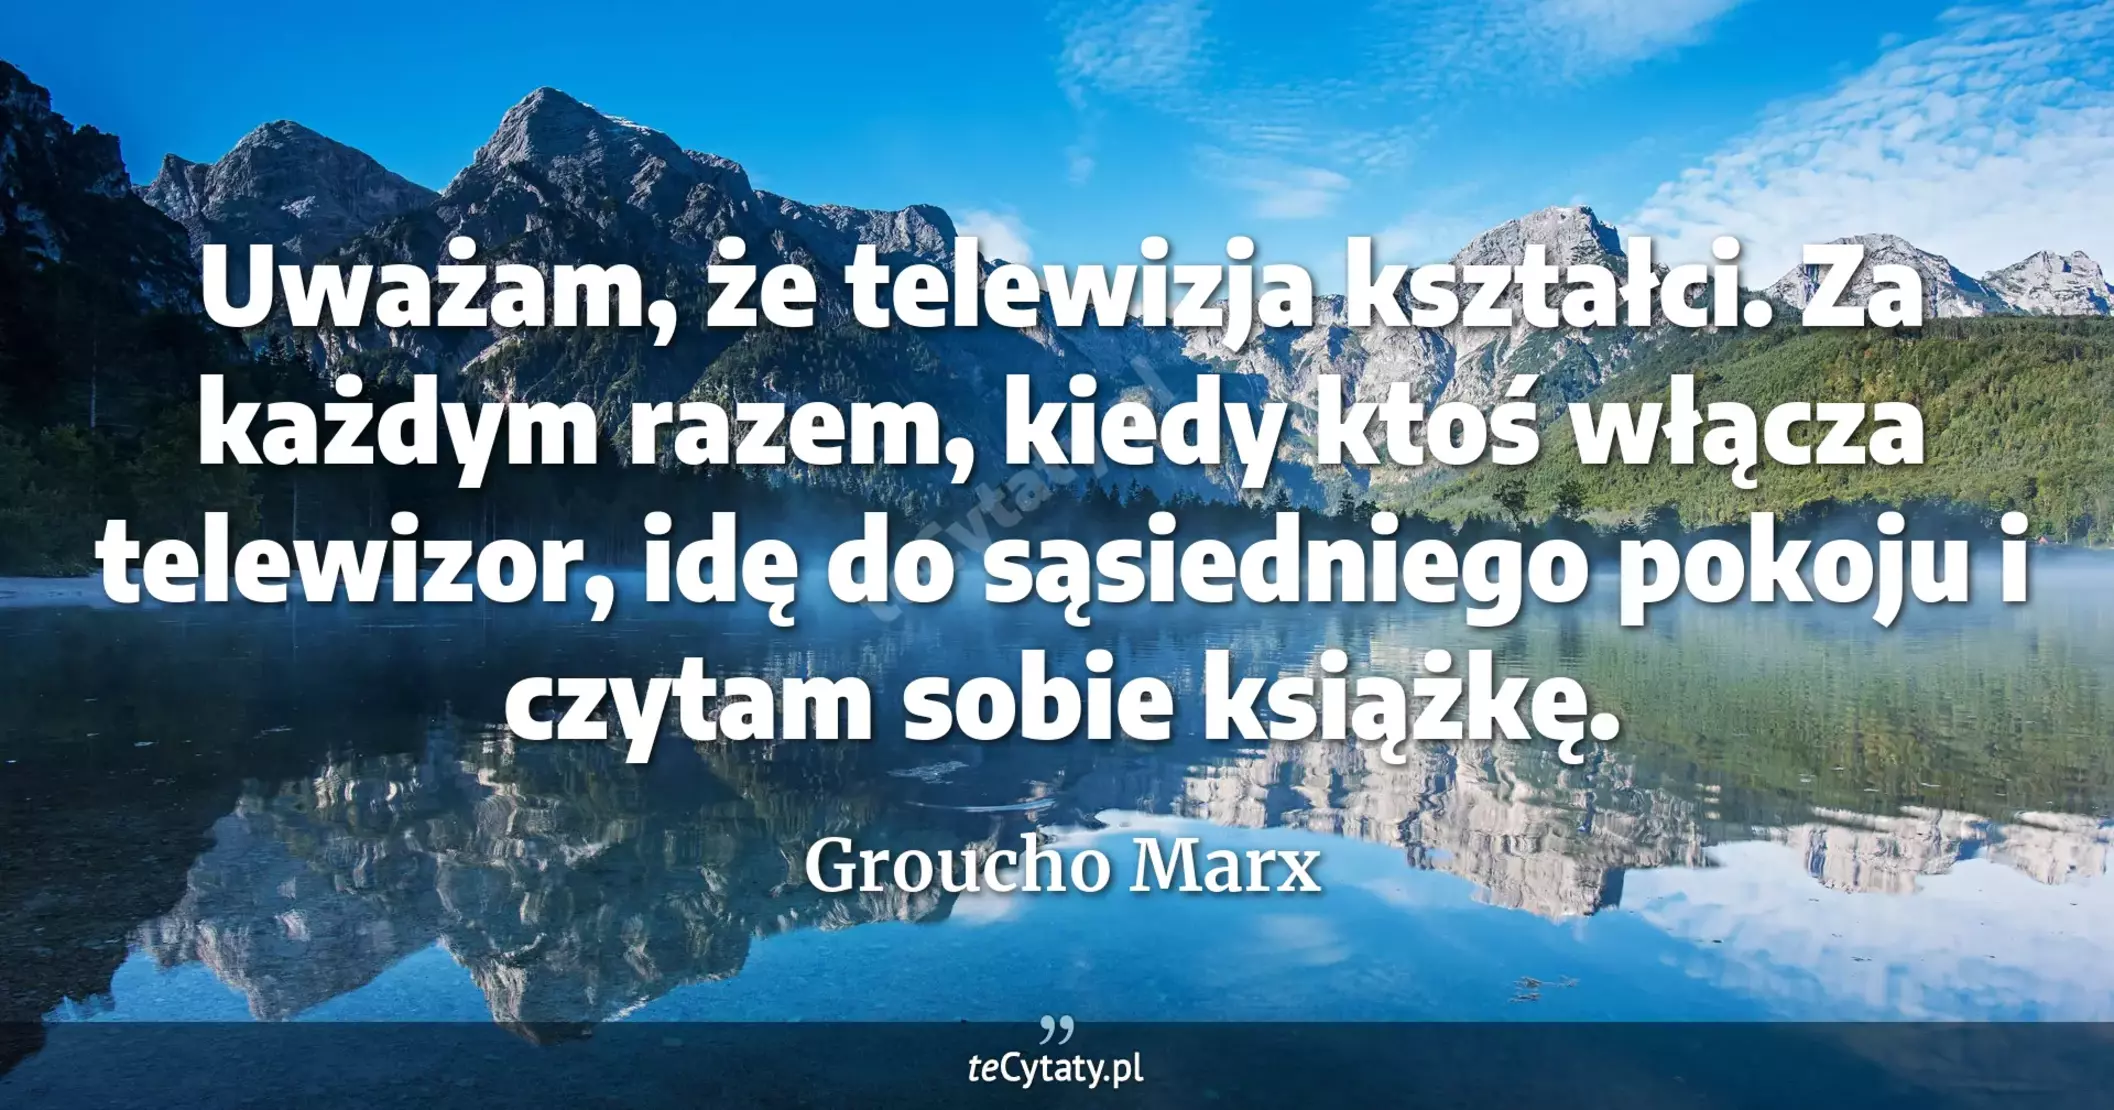 Uważam, że telewizja kształci. Za każdym razem, kiedy ktoś włącza telewizor, idę do sąsiedniego pokoju i czytam sobie książkę. - Groucho Marx